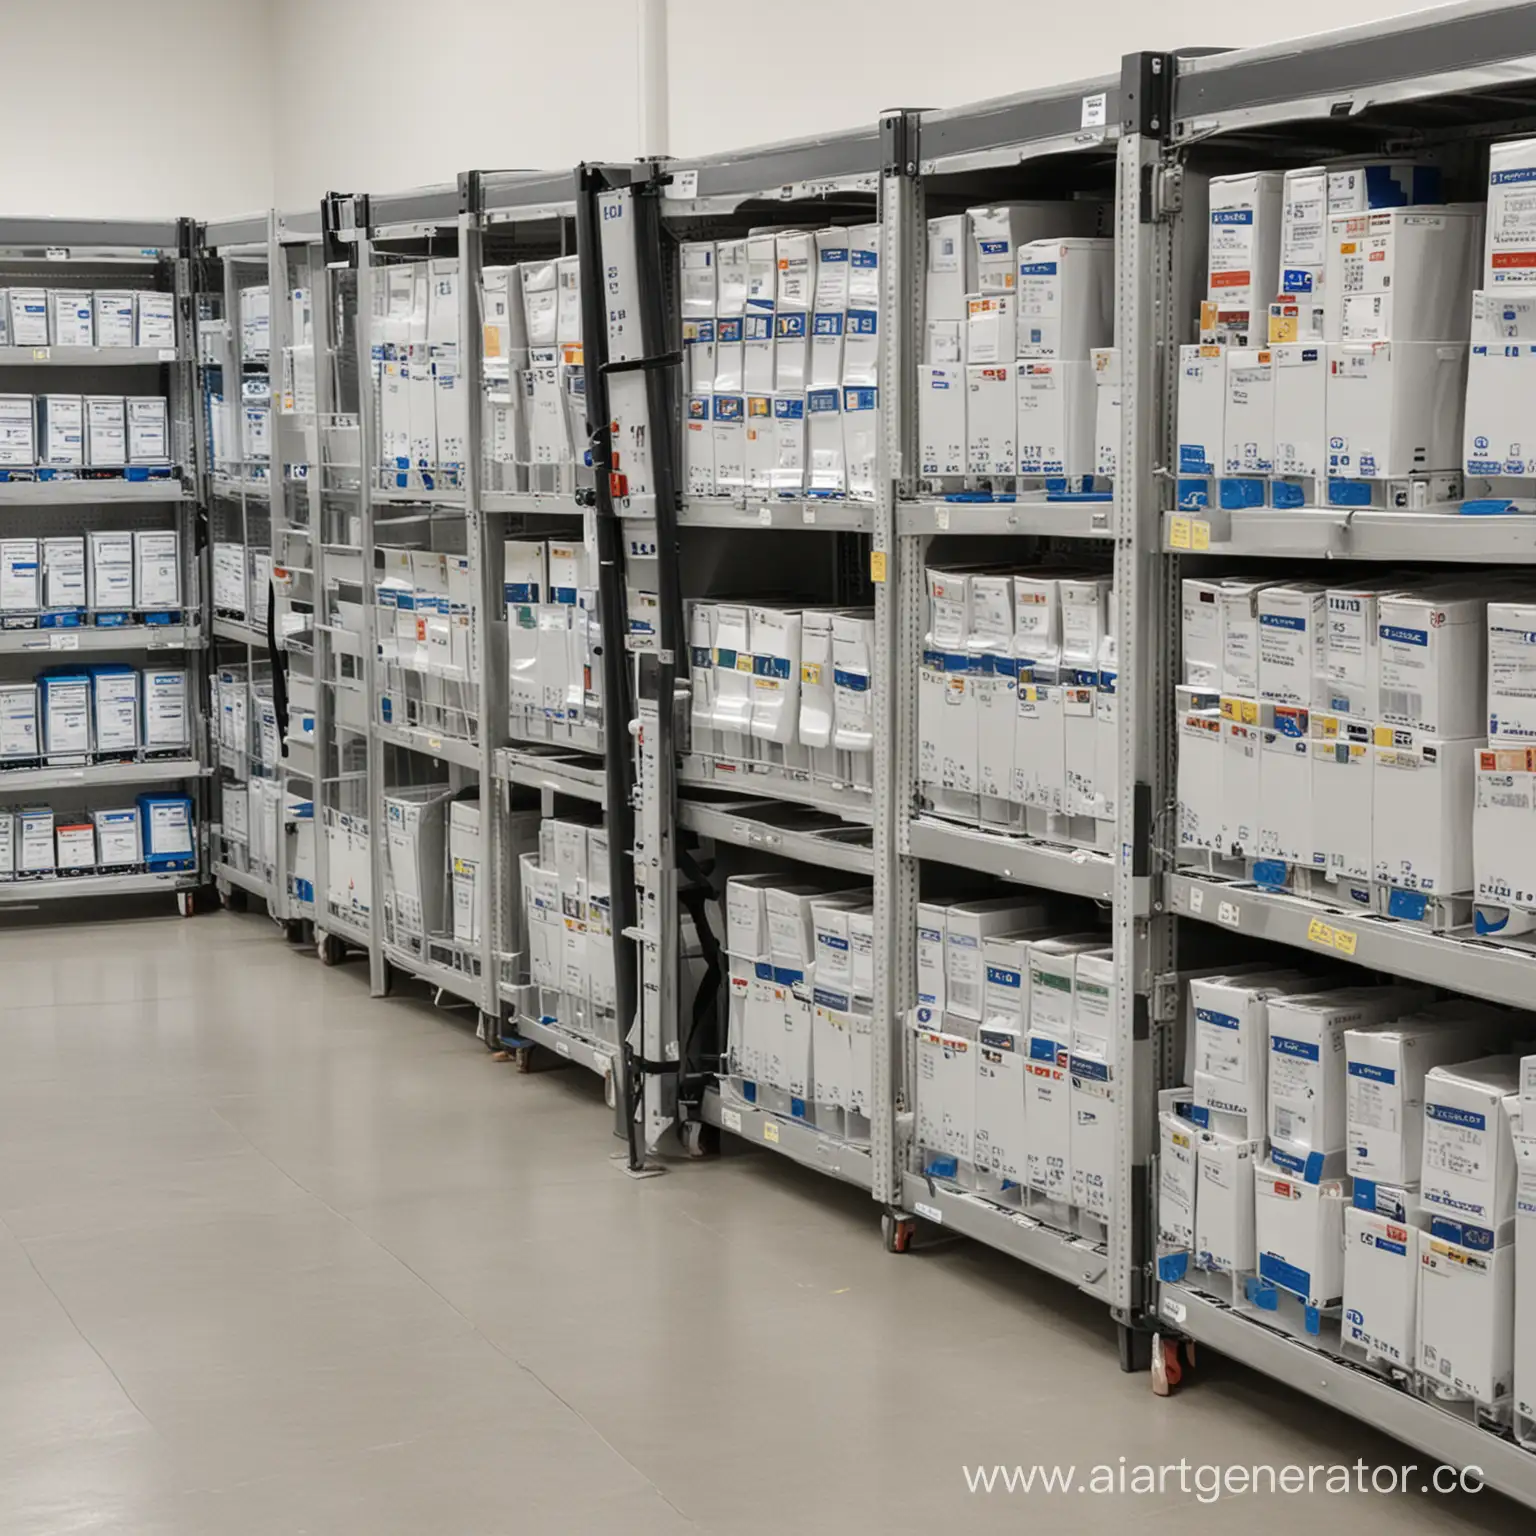 контроль и мониторинг каждой единицы лекарственного препарата во время его хранения и транспортировки с помощью датчиков